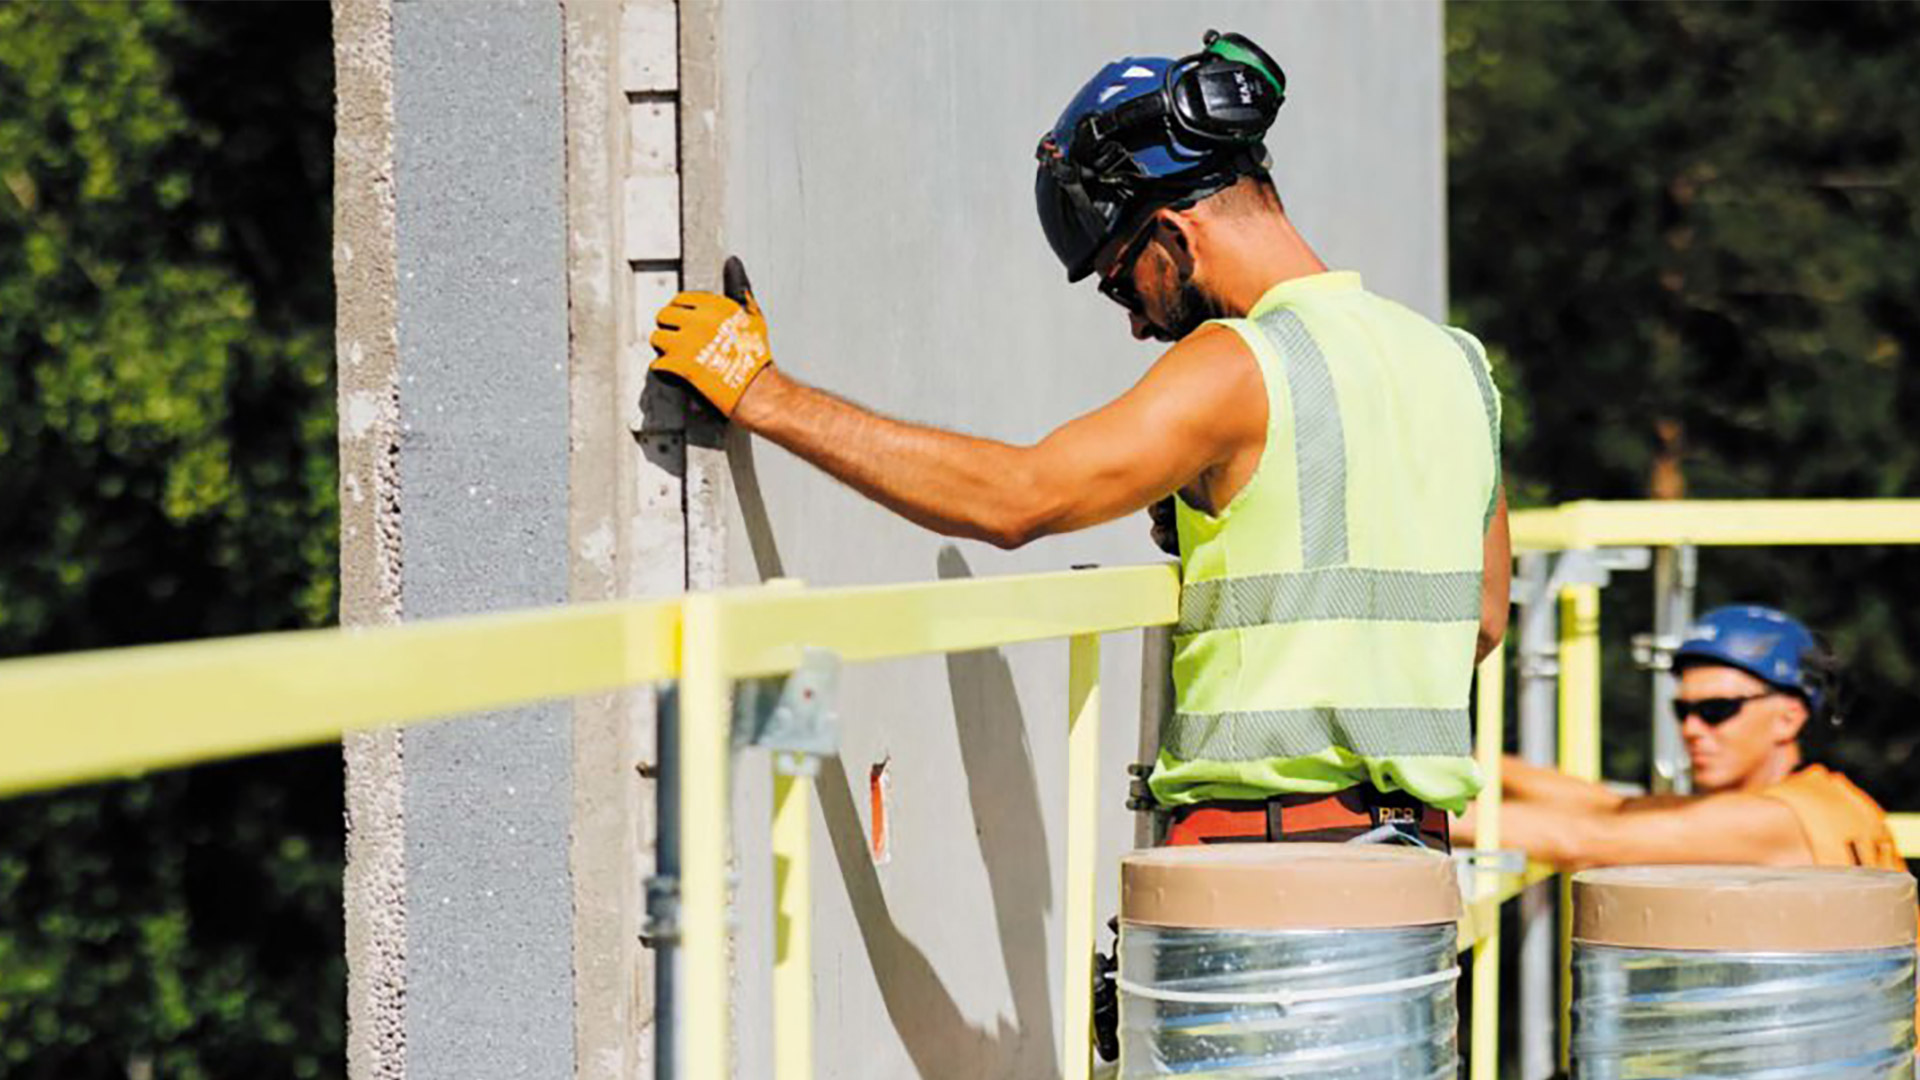 Machokulttuuri kasvaa ruotsalaisilla rakennusalan työpaikoilla